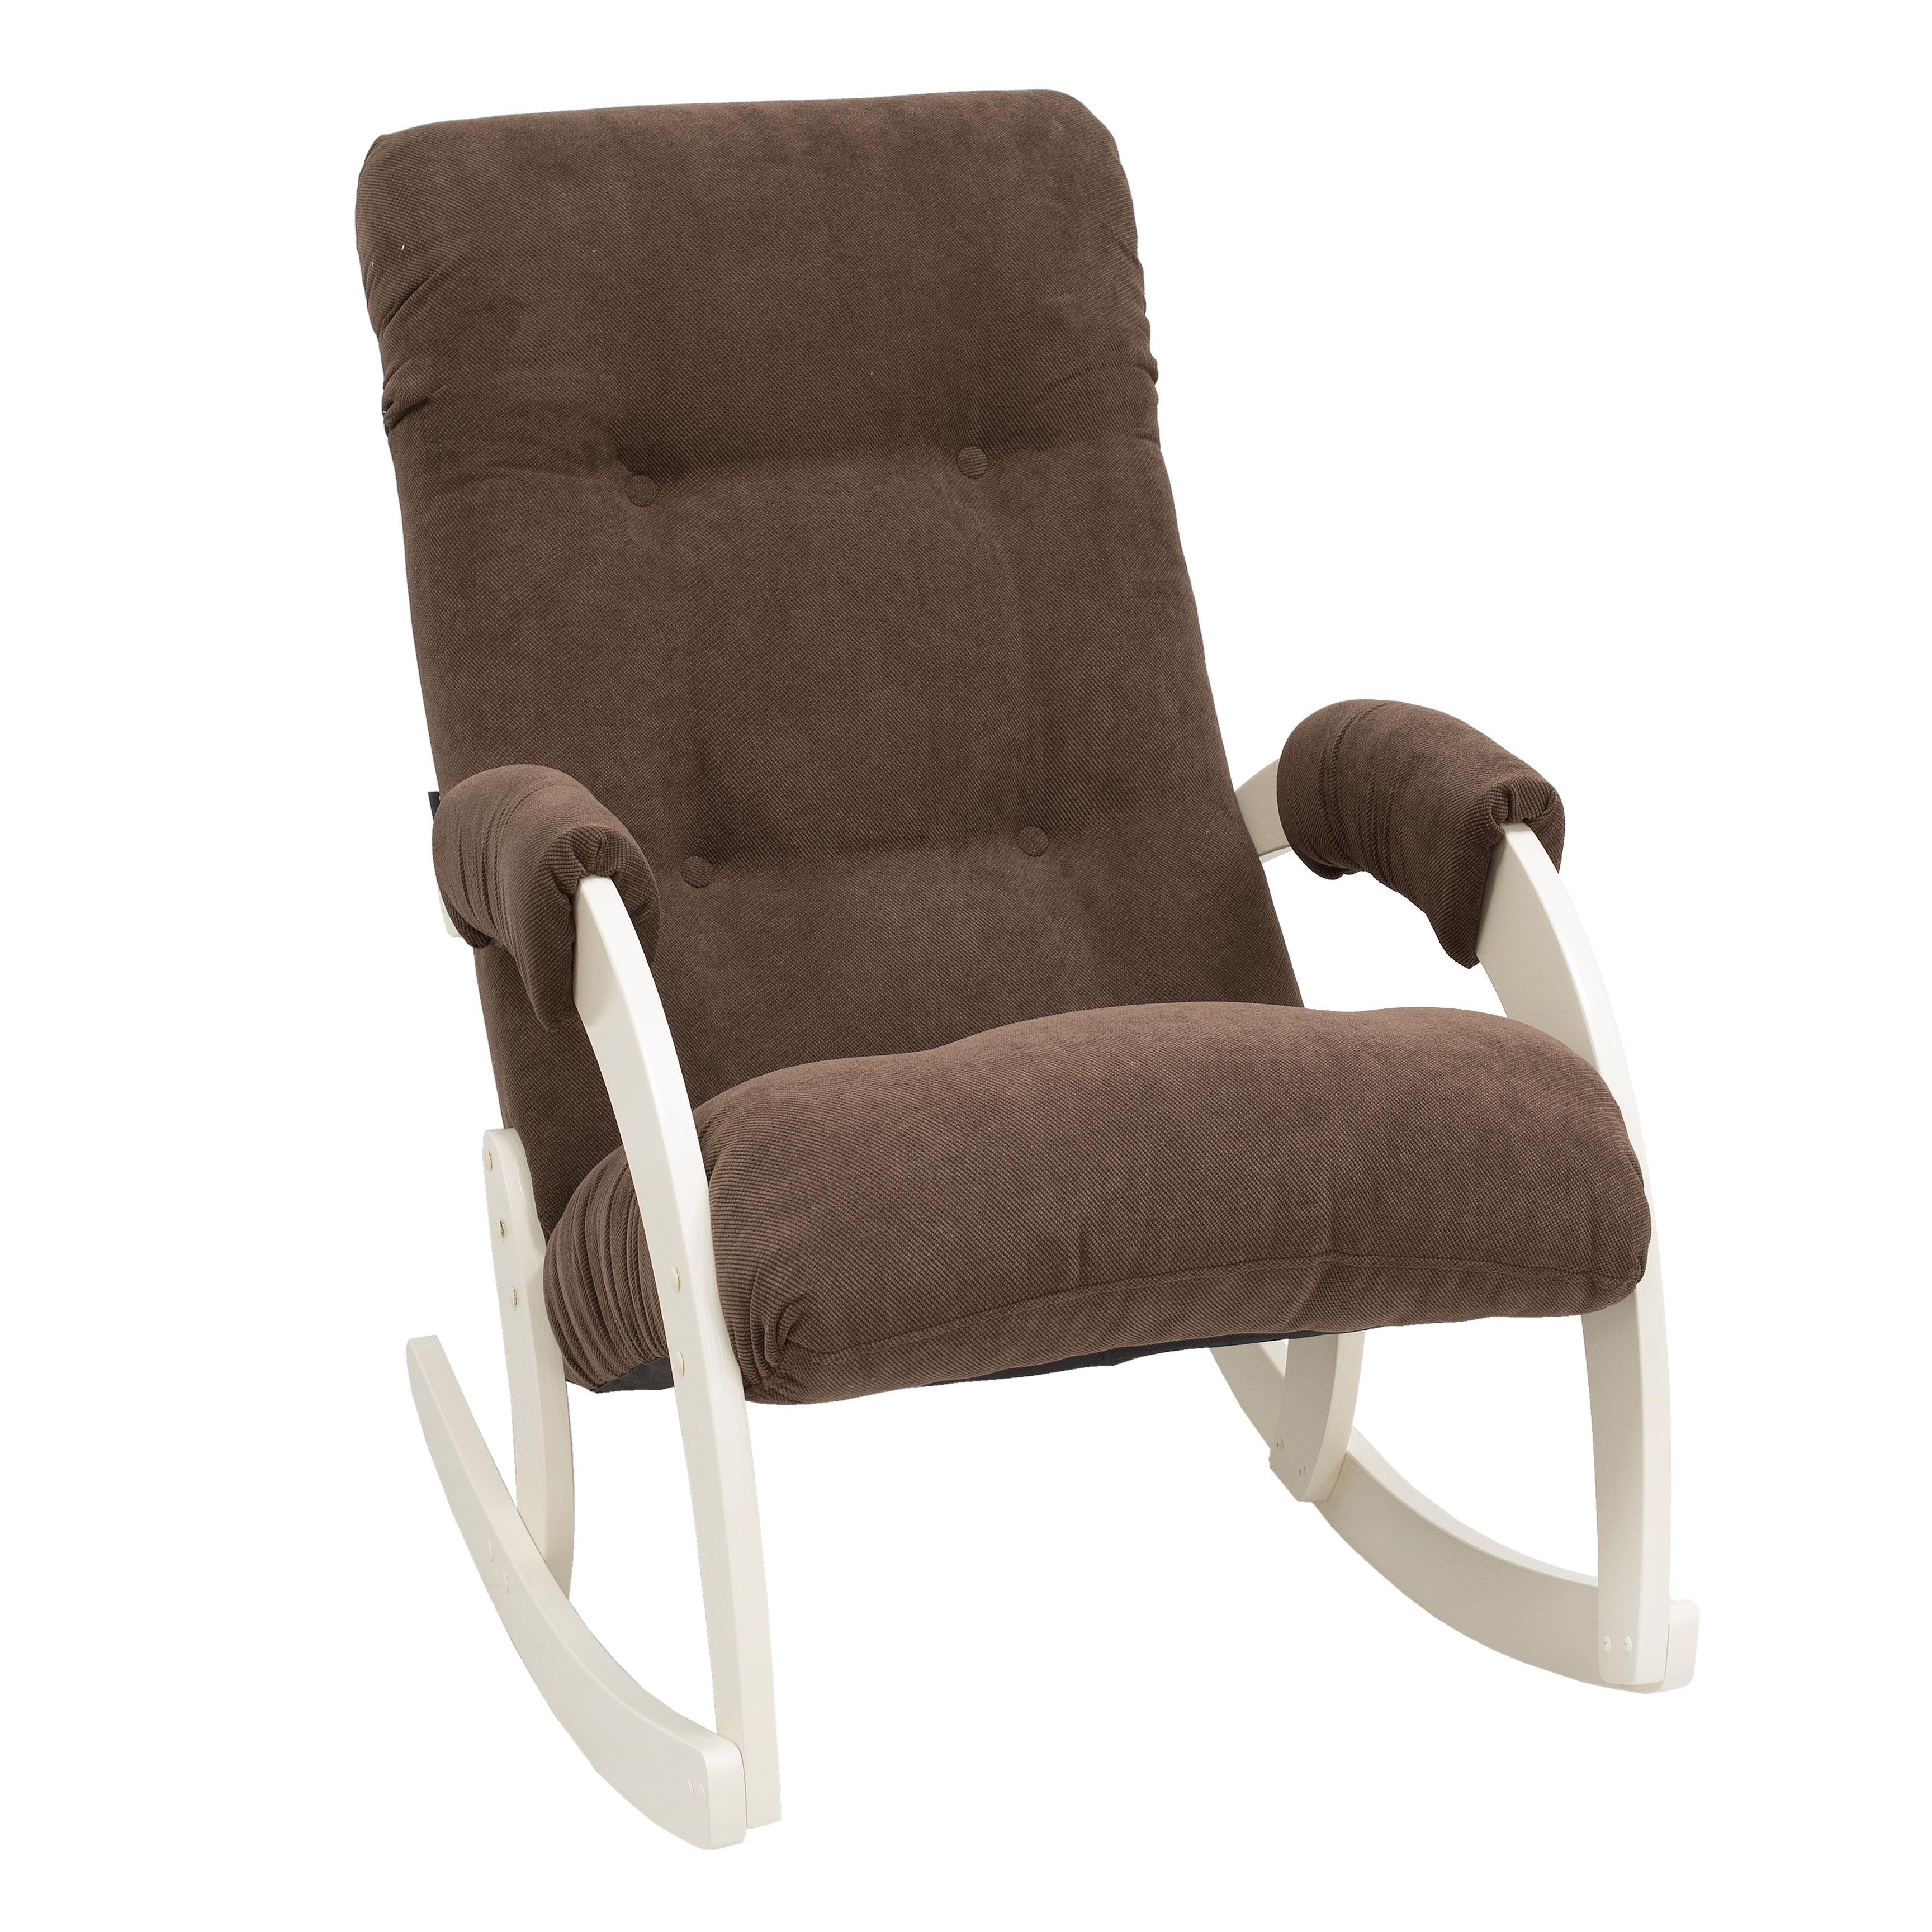 Кресло-качалка verona комфорт коричневый 60x87x103 см.